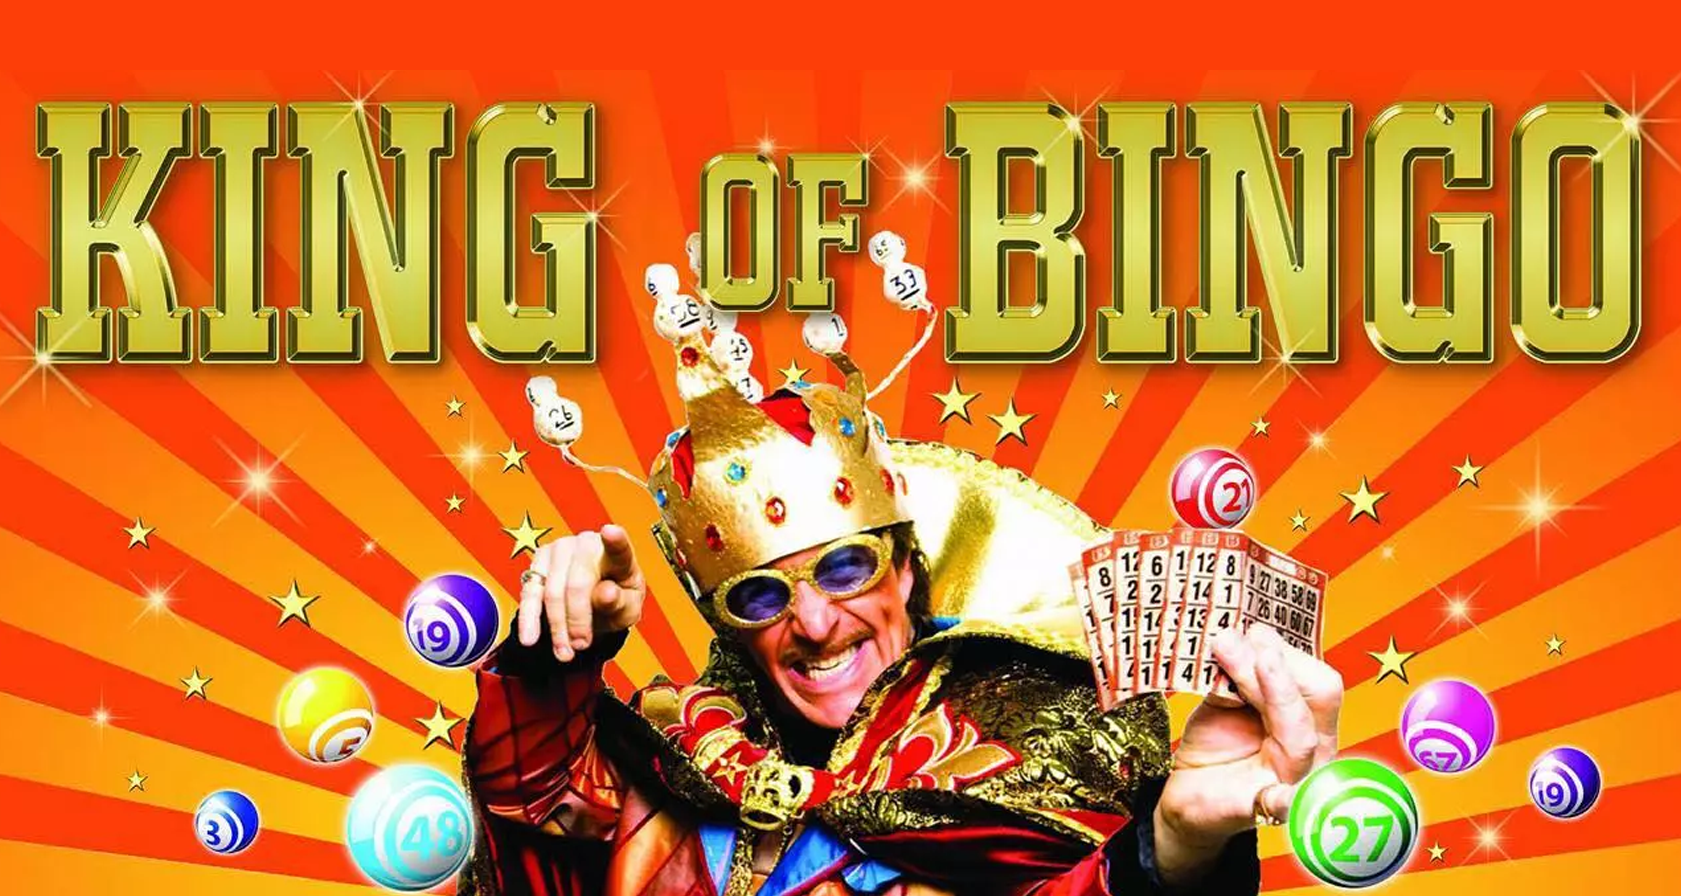 Teamuitje Leeuwarden: King of Bingo